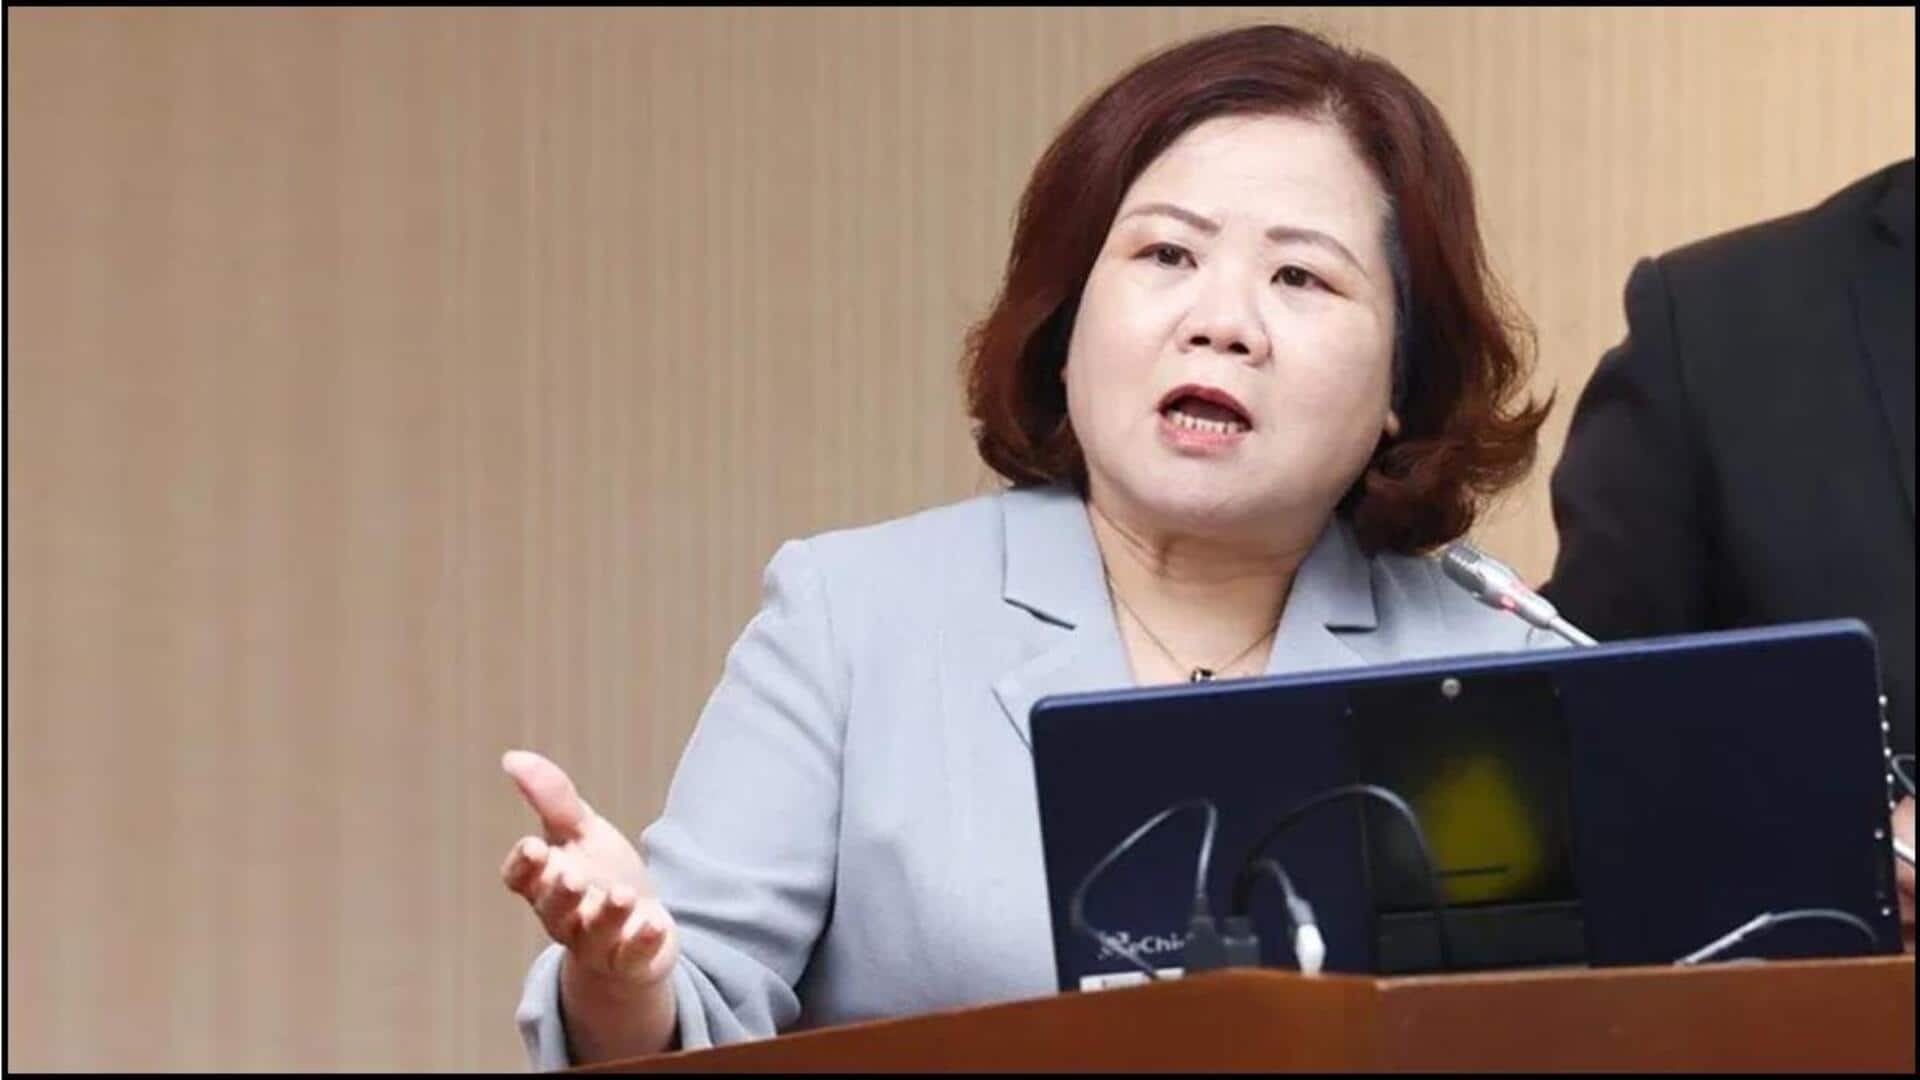 Taiwan Minister: భారతీయులపై 'జాత్యహంకార' వ్యాఖ్యలపై తైవాన్ మంత్రి క్షమాపణలు 